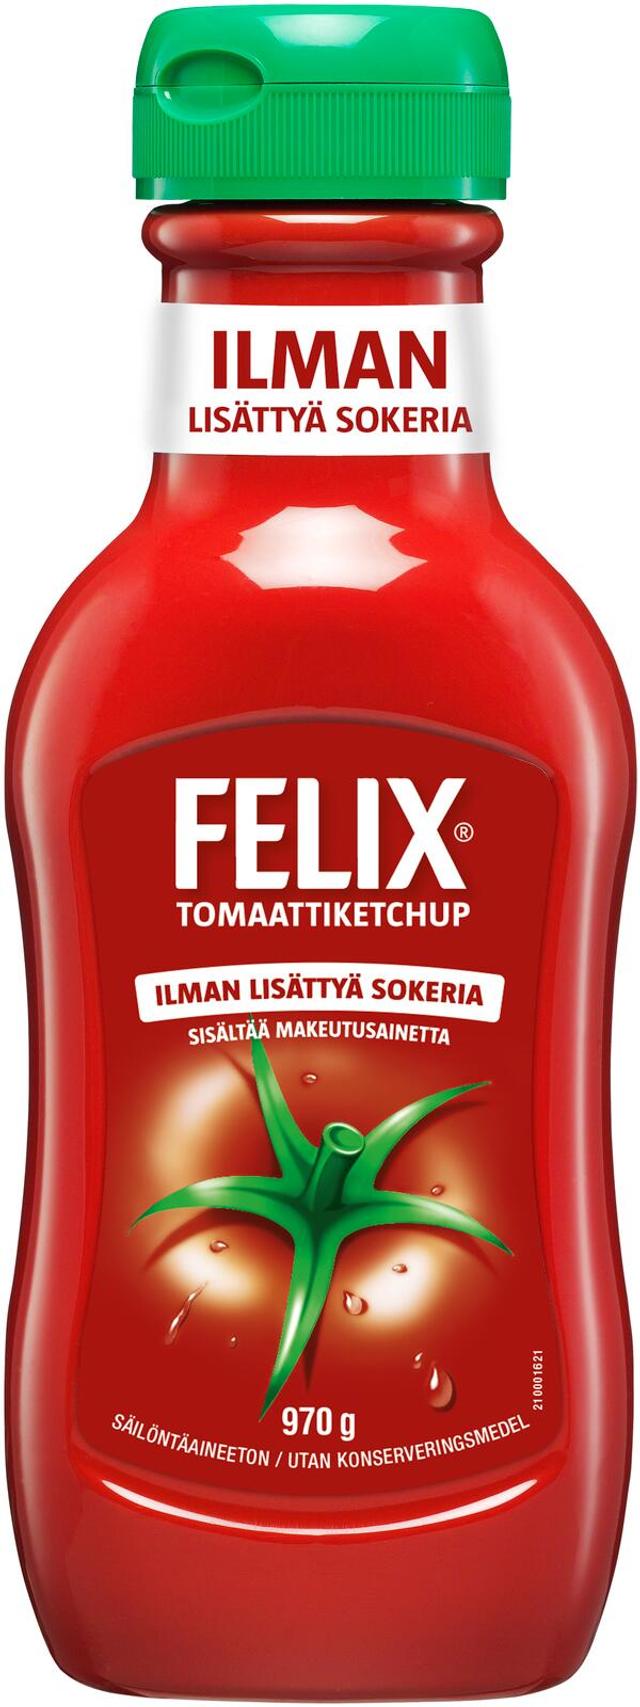 Felix ilman lisättyä sokeria ketchup 970g